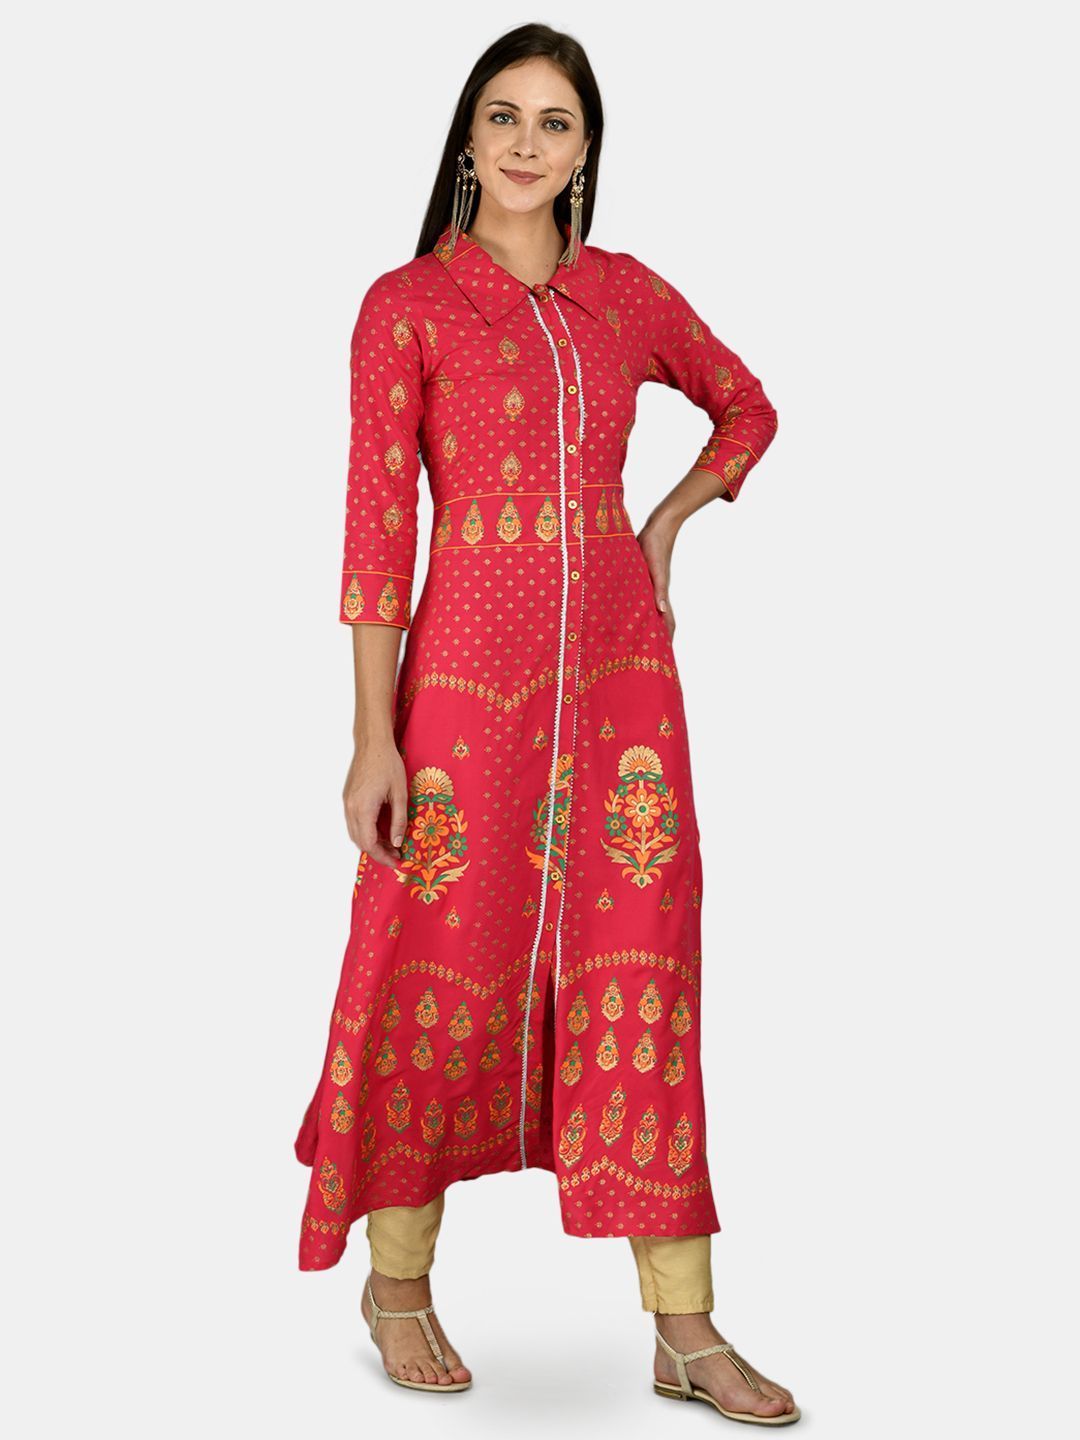 Women's Red Cotton Printed 3/4 Sleeve Shirt Collar Casual Anarkali kurta - Myshka